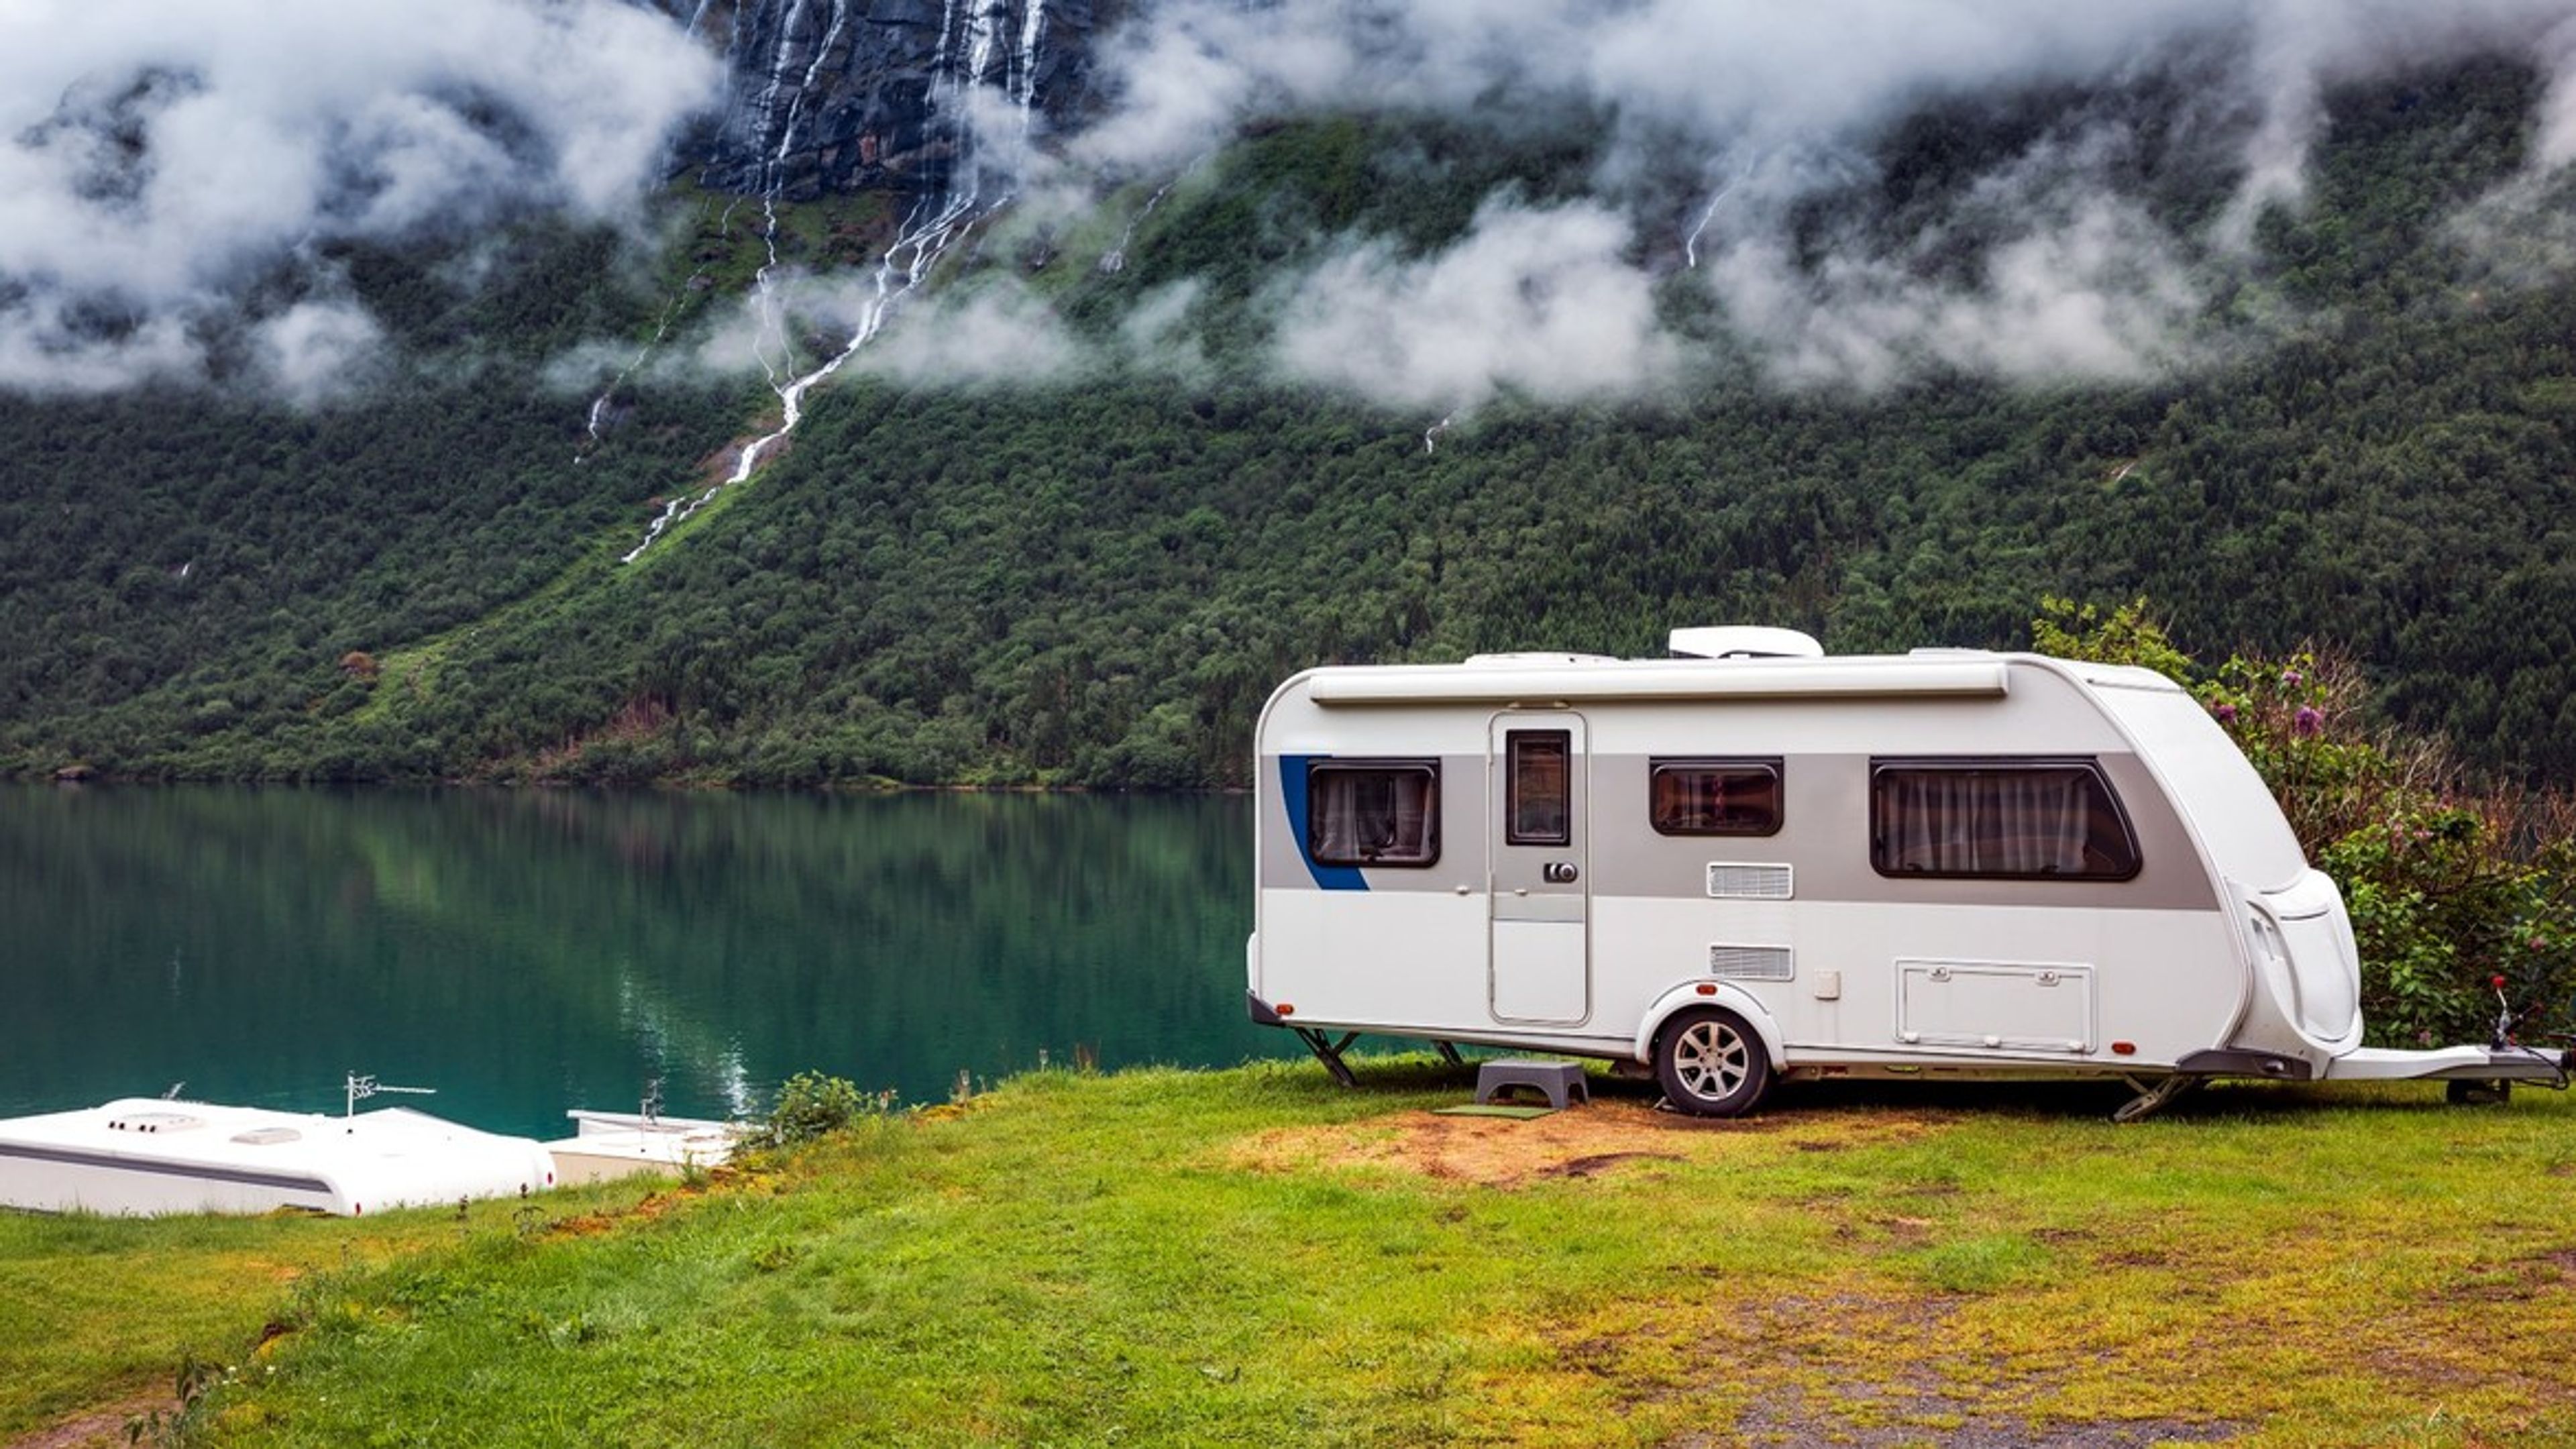 Přemýšlíte, kam se vydat karavanem na prázdniny? Přinášíme vám tipy na cesty od členů Campiri týmu